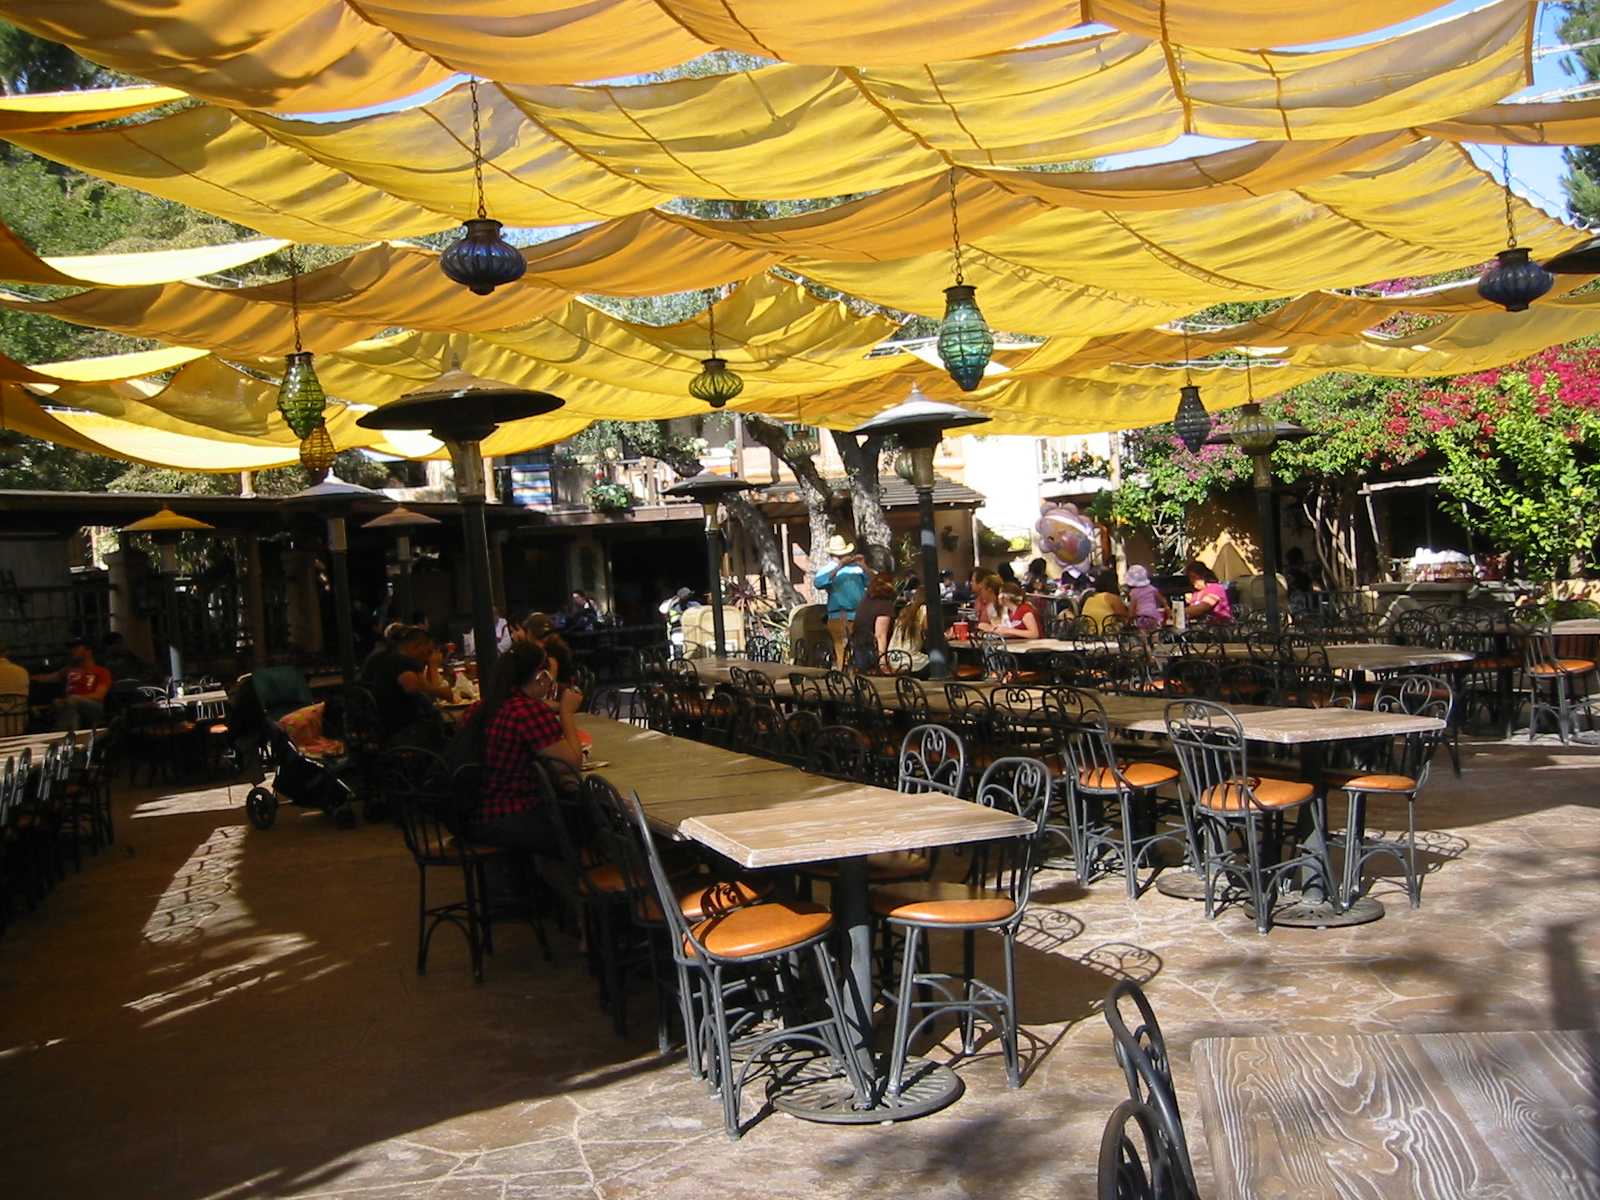 Rancho del Zocalo - Outdoor Eating Area